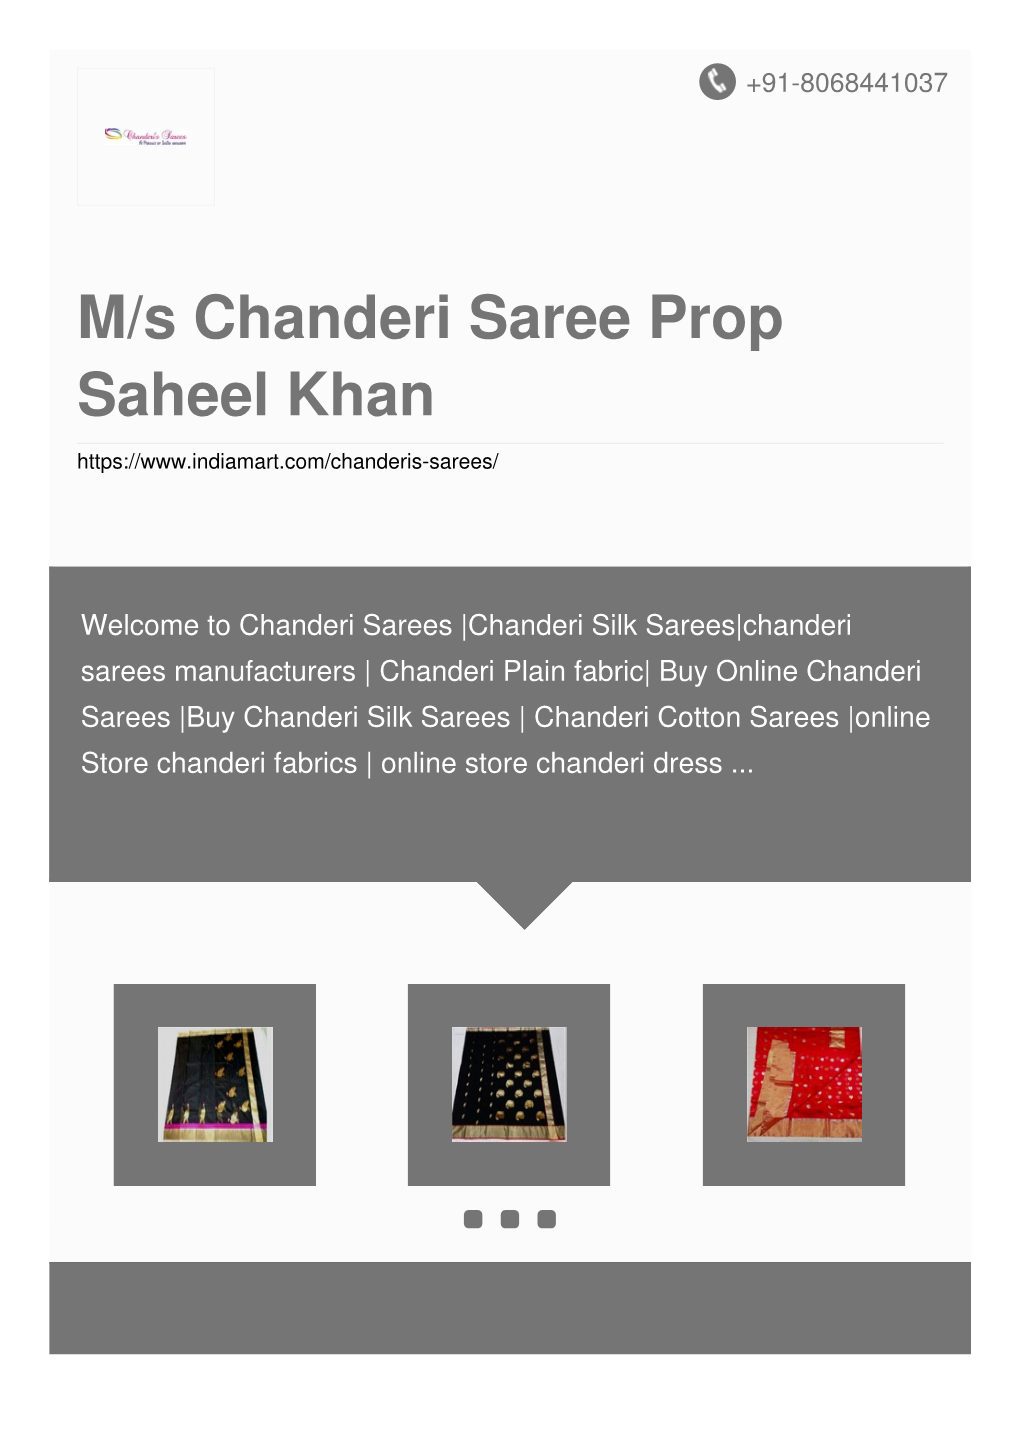 M/S Chanderi Saree Prop Saheel Khan